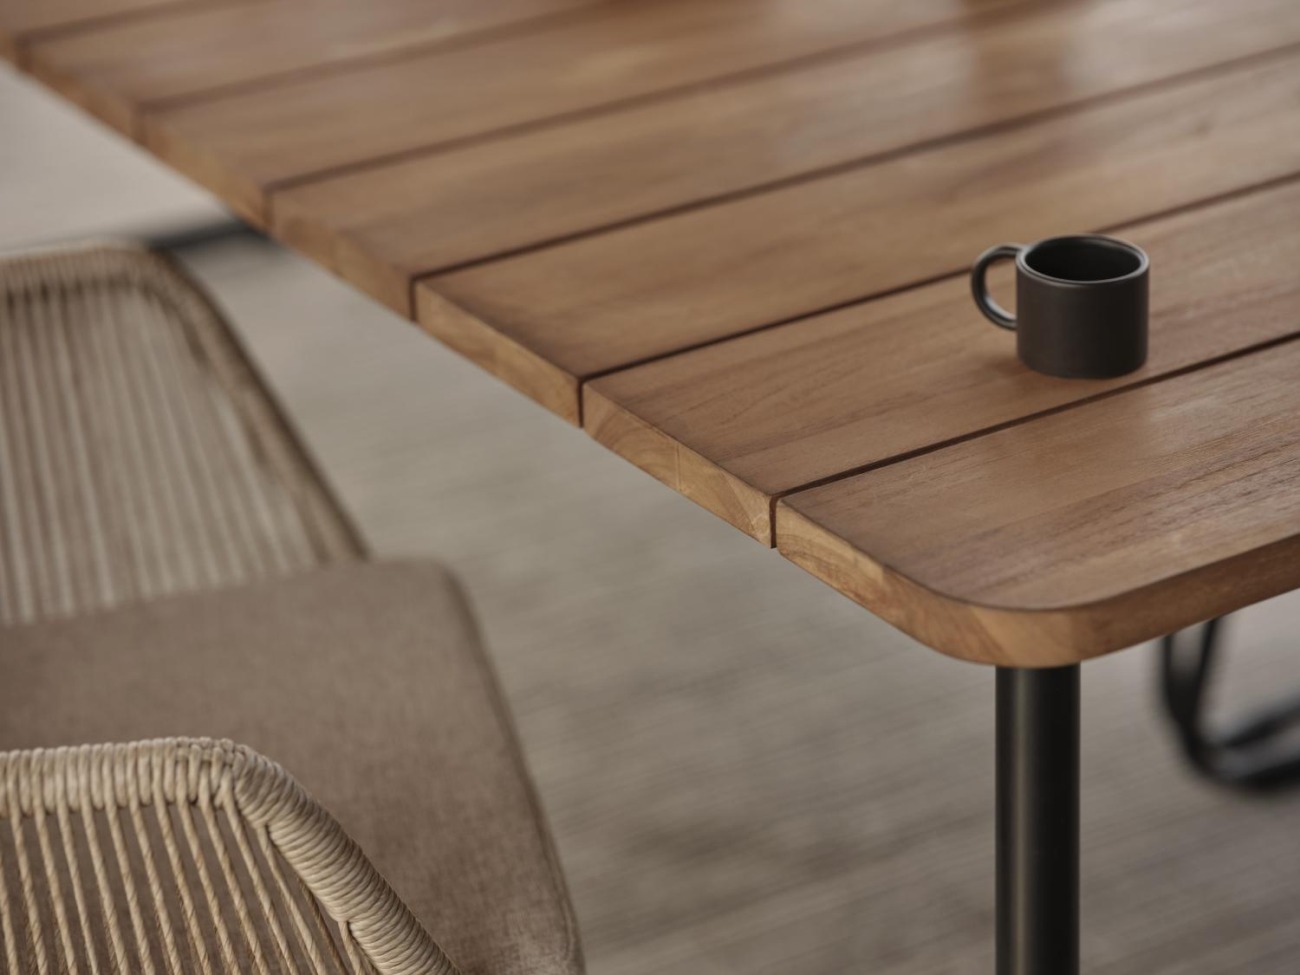 Der Gartenesstisch Nolli überzeugt mit seinem modernen Design. Gefertigt wurde die Tischplatte aus Teakholz und hat einen natürlichen Farbton. Das Gestell ist auch aus Metall und hat eine schwarze Farbe. Der Tisch besitzt eine Länge von 175 cm.